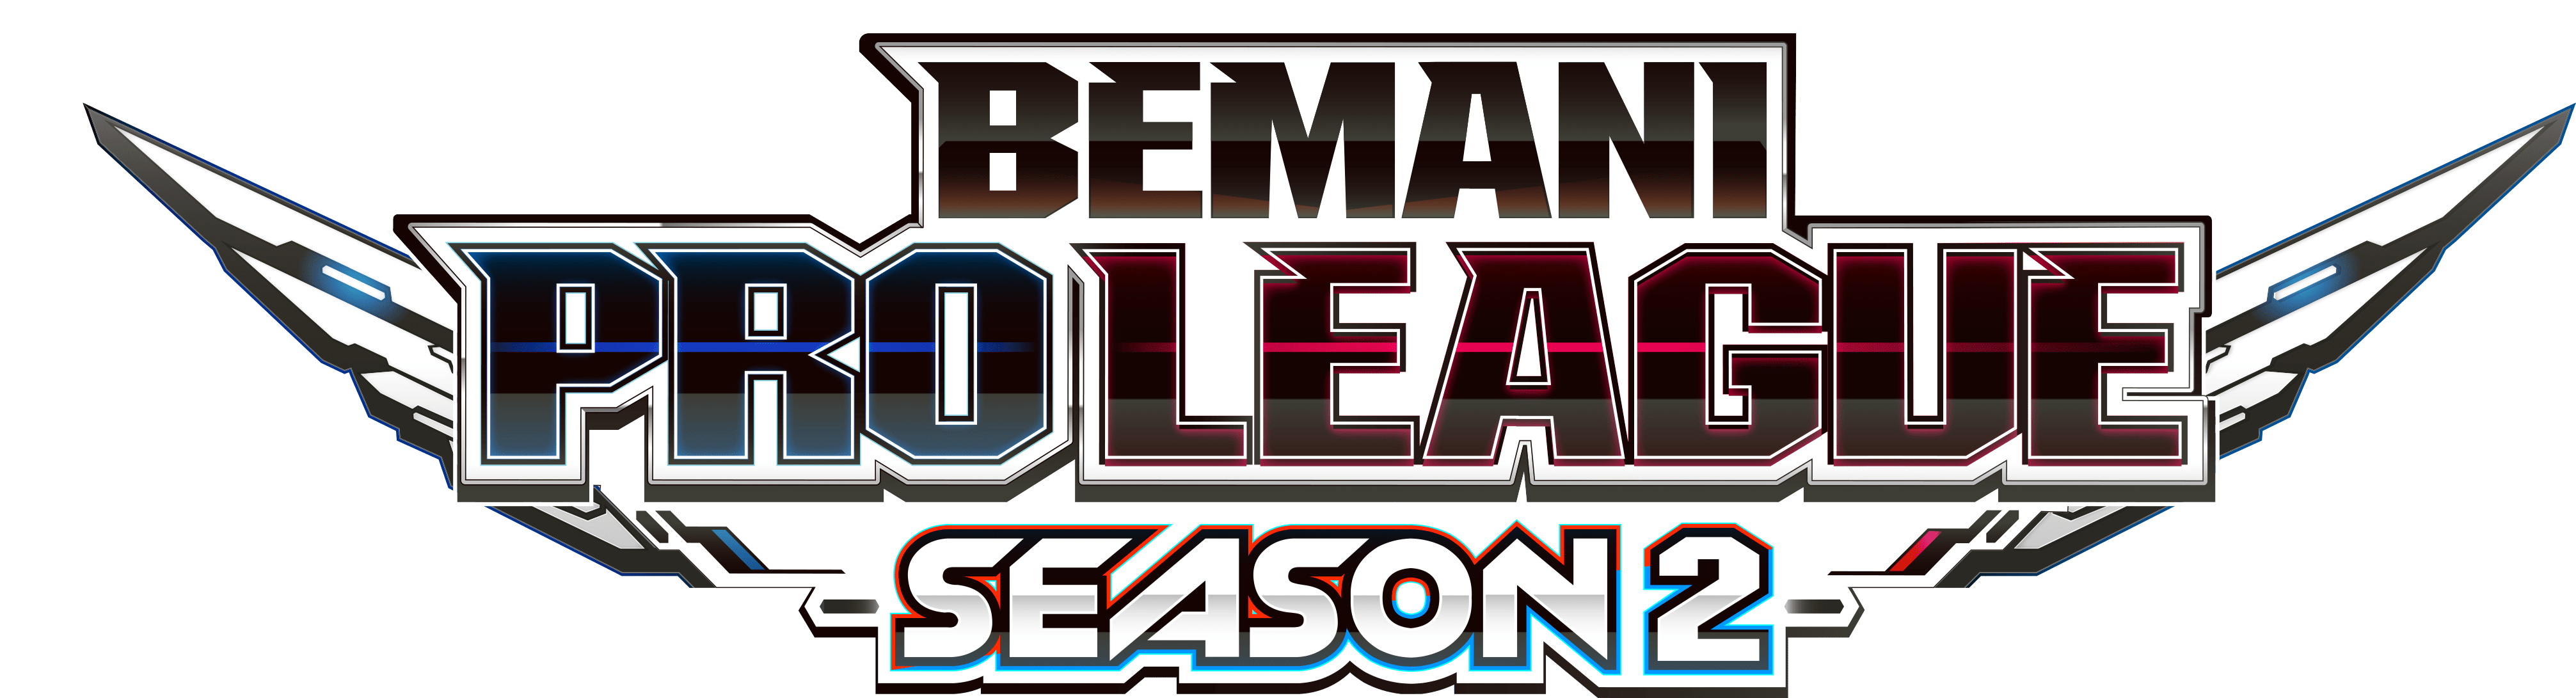 【大会情報】BEMANI PRO LEAGUE SEASON2 レギュラーステージ 第11、12試合【2022年8月3日】